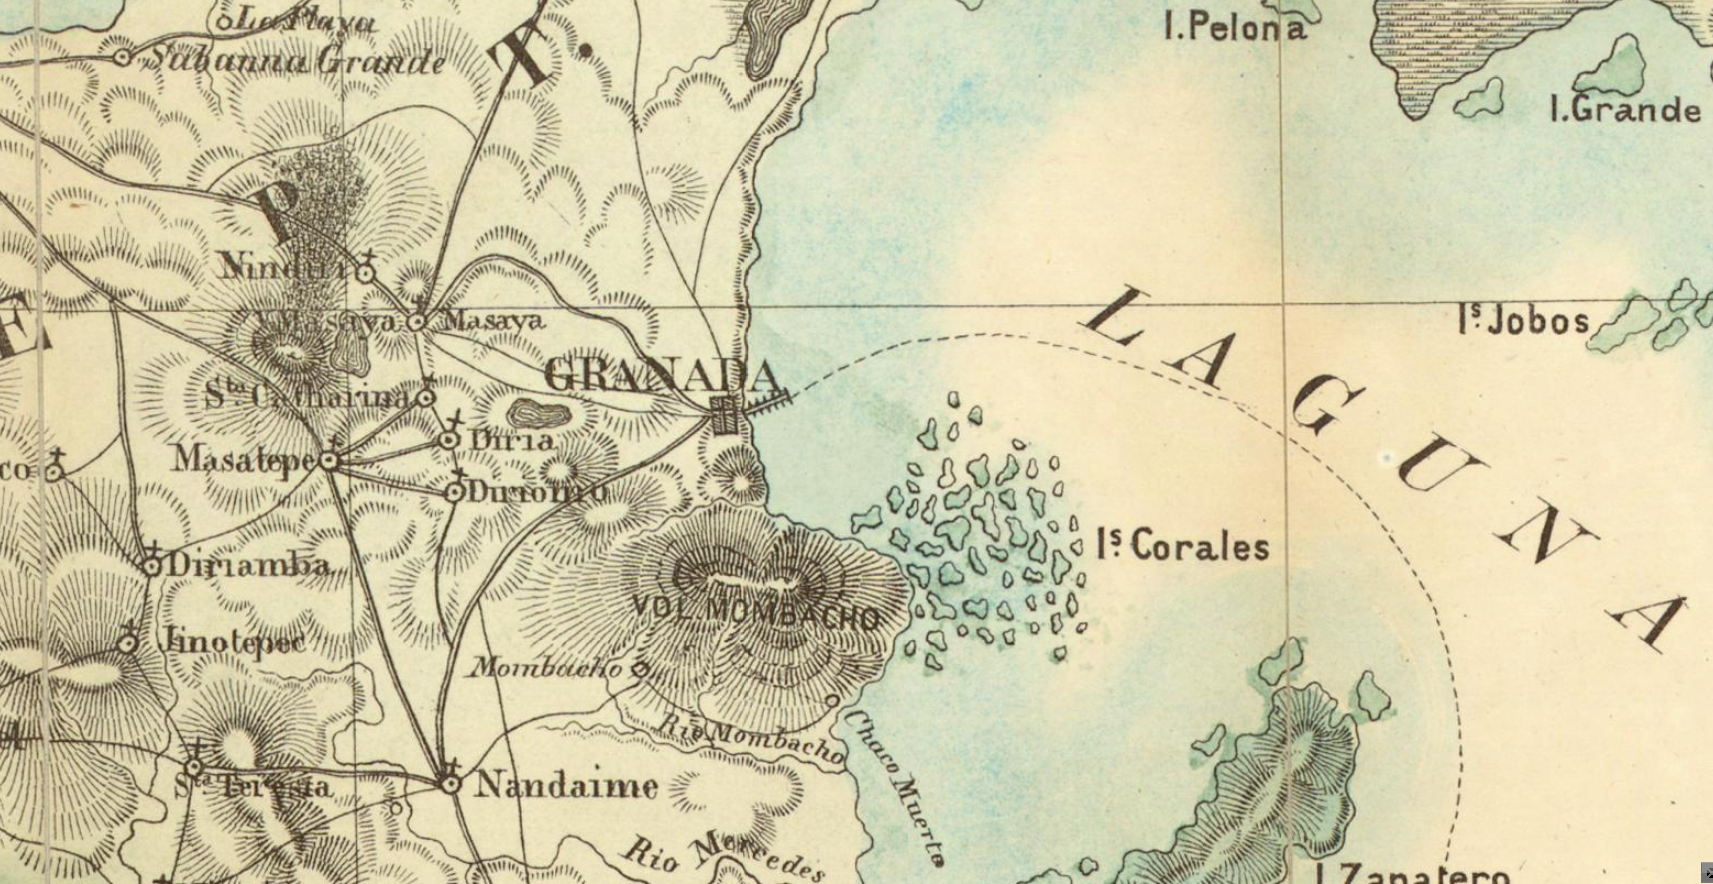 Mapa de la Republica de Nicaragua (1859) de Maximilian von Sonnenstern. Centrado sobre la ciudad de Granada, junto al volcán Mombacho y la laguna